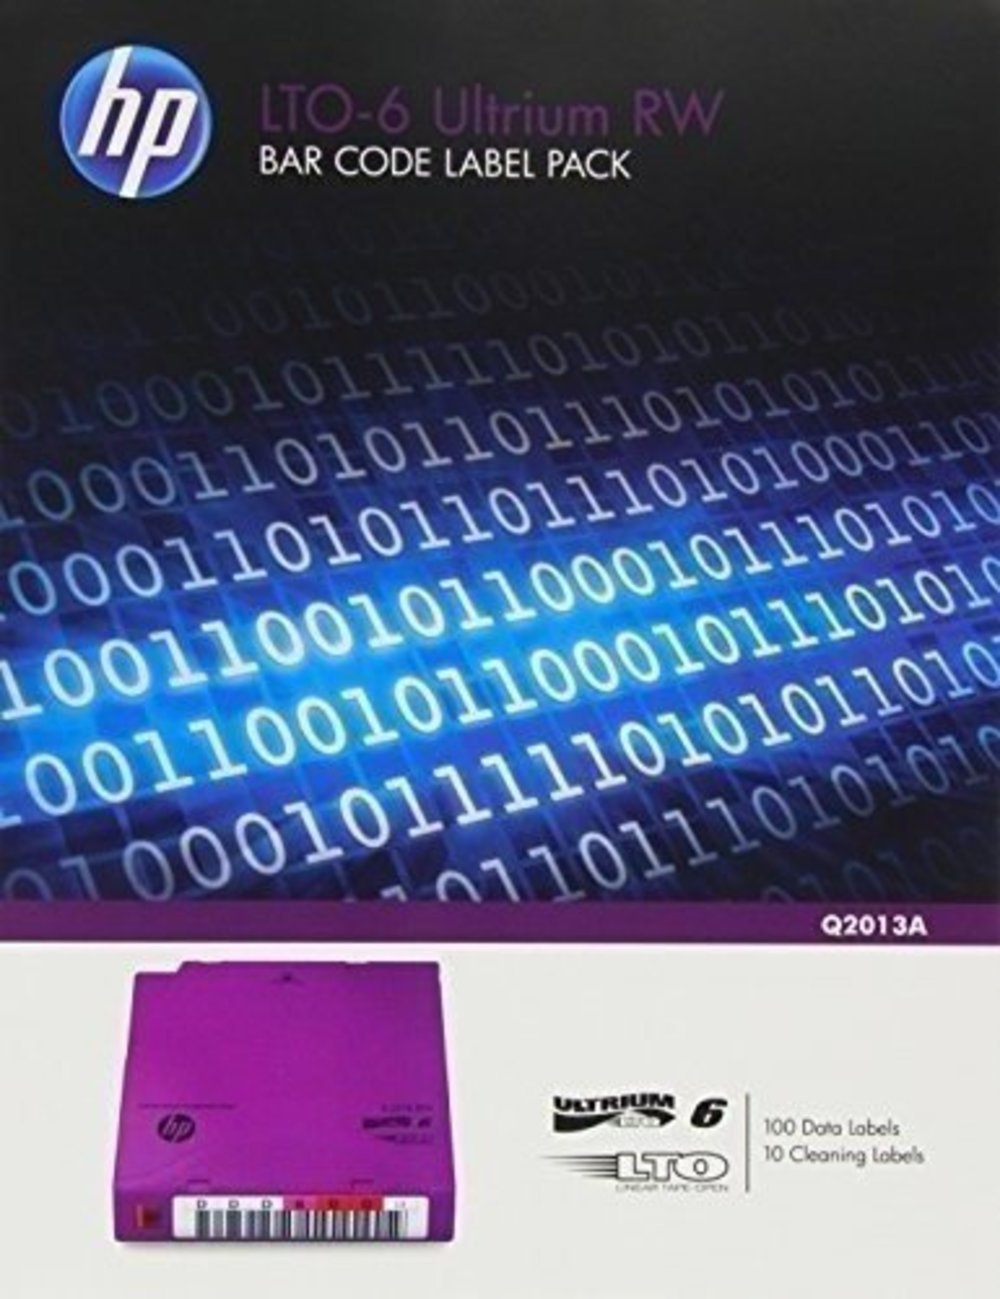 HPE LTO Ultrium 6 RW Bar Code Label Pack - Professionelle Etiketten für Datenschutz und effiziente Datenverwaltung